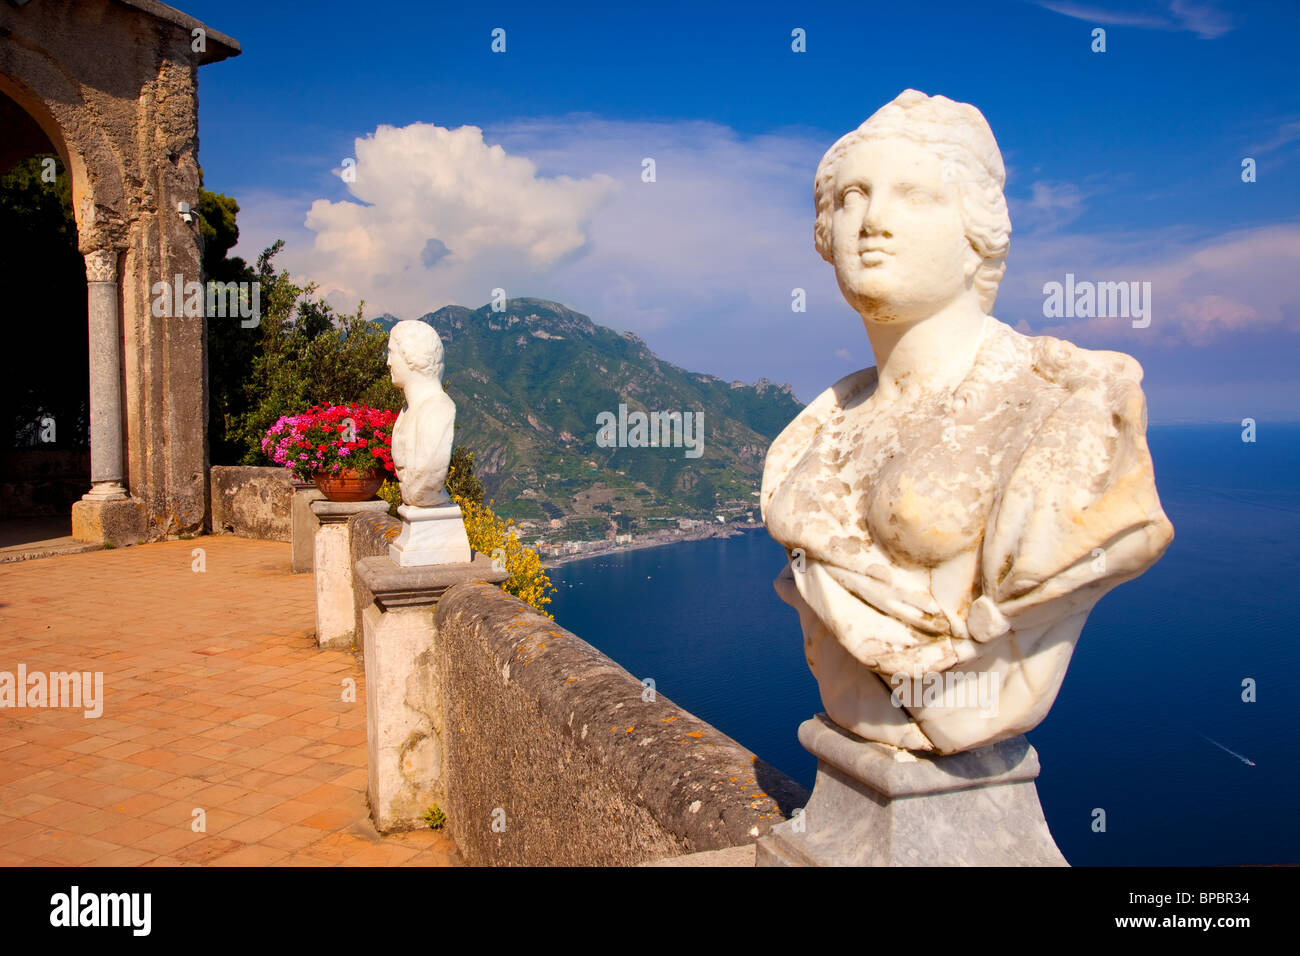 Statues le long de la terrasse de la Villa Cimbrone à Ravello, le long de la côte amalfitaine, Campanie Italie Banque D'Images